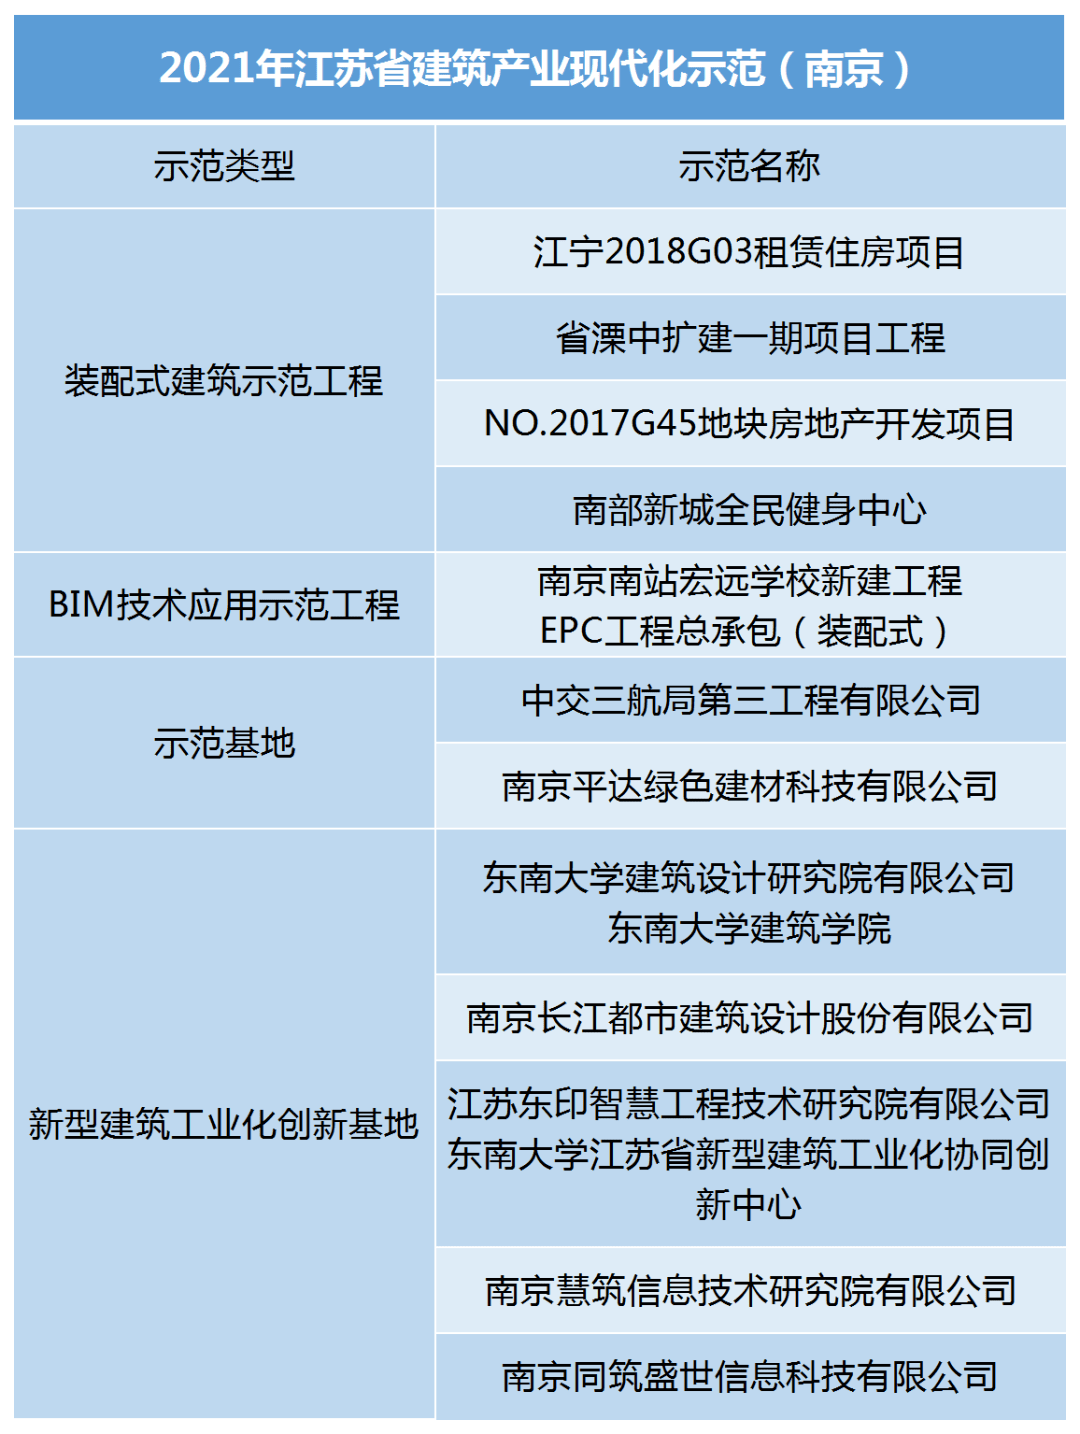 bim工程师考试条件及时间,南京bim工程师招生收费